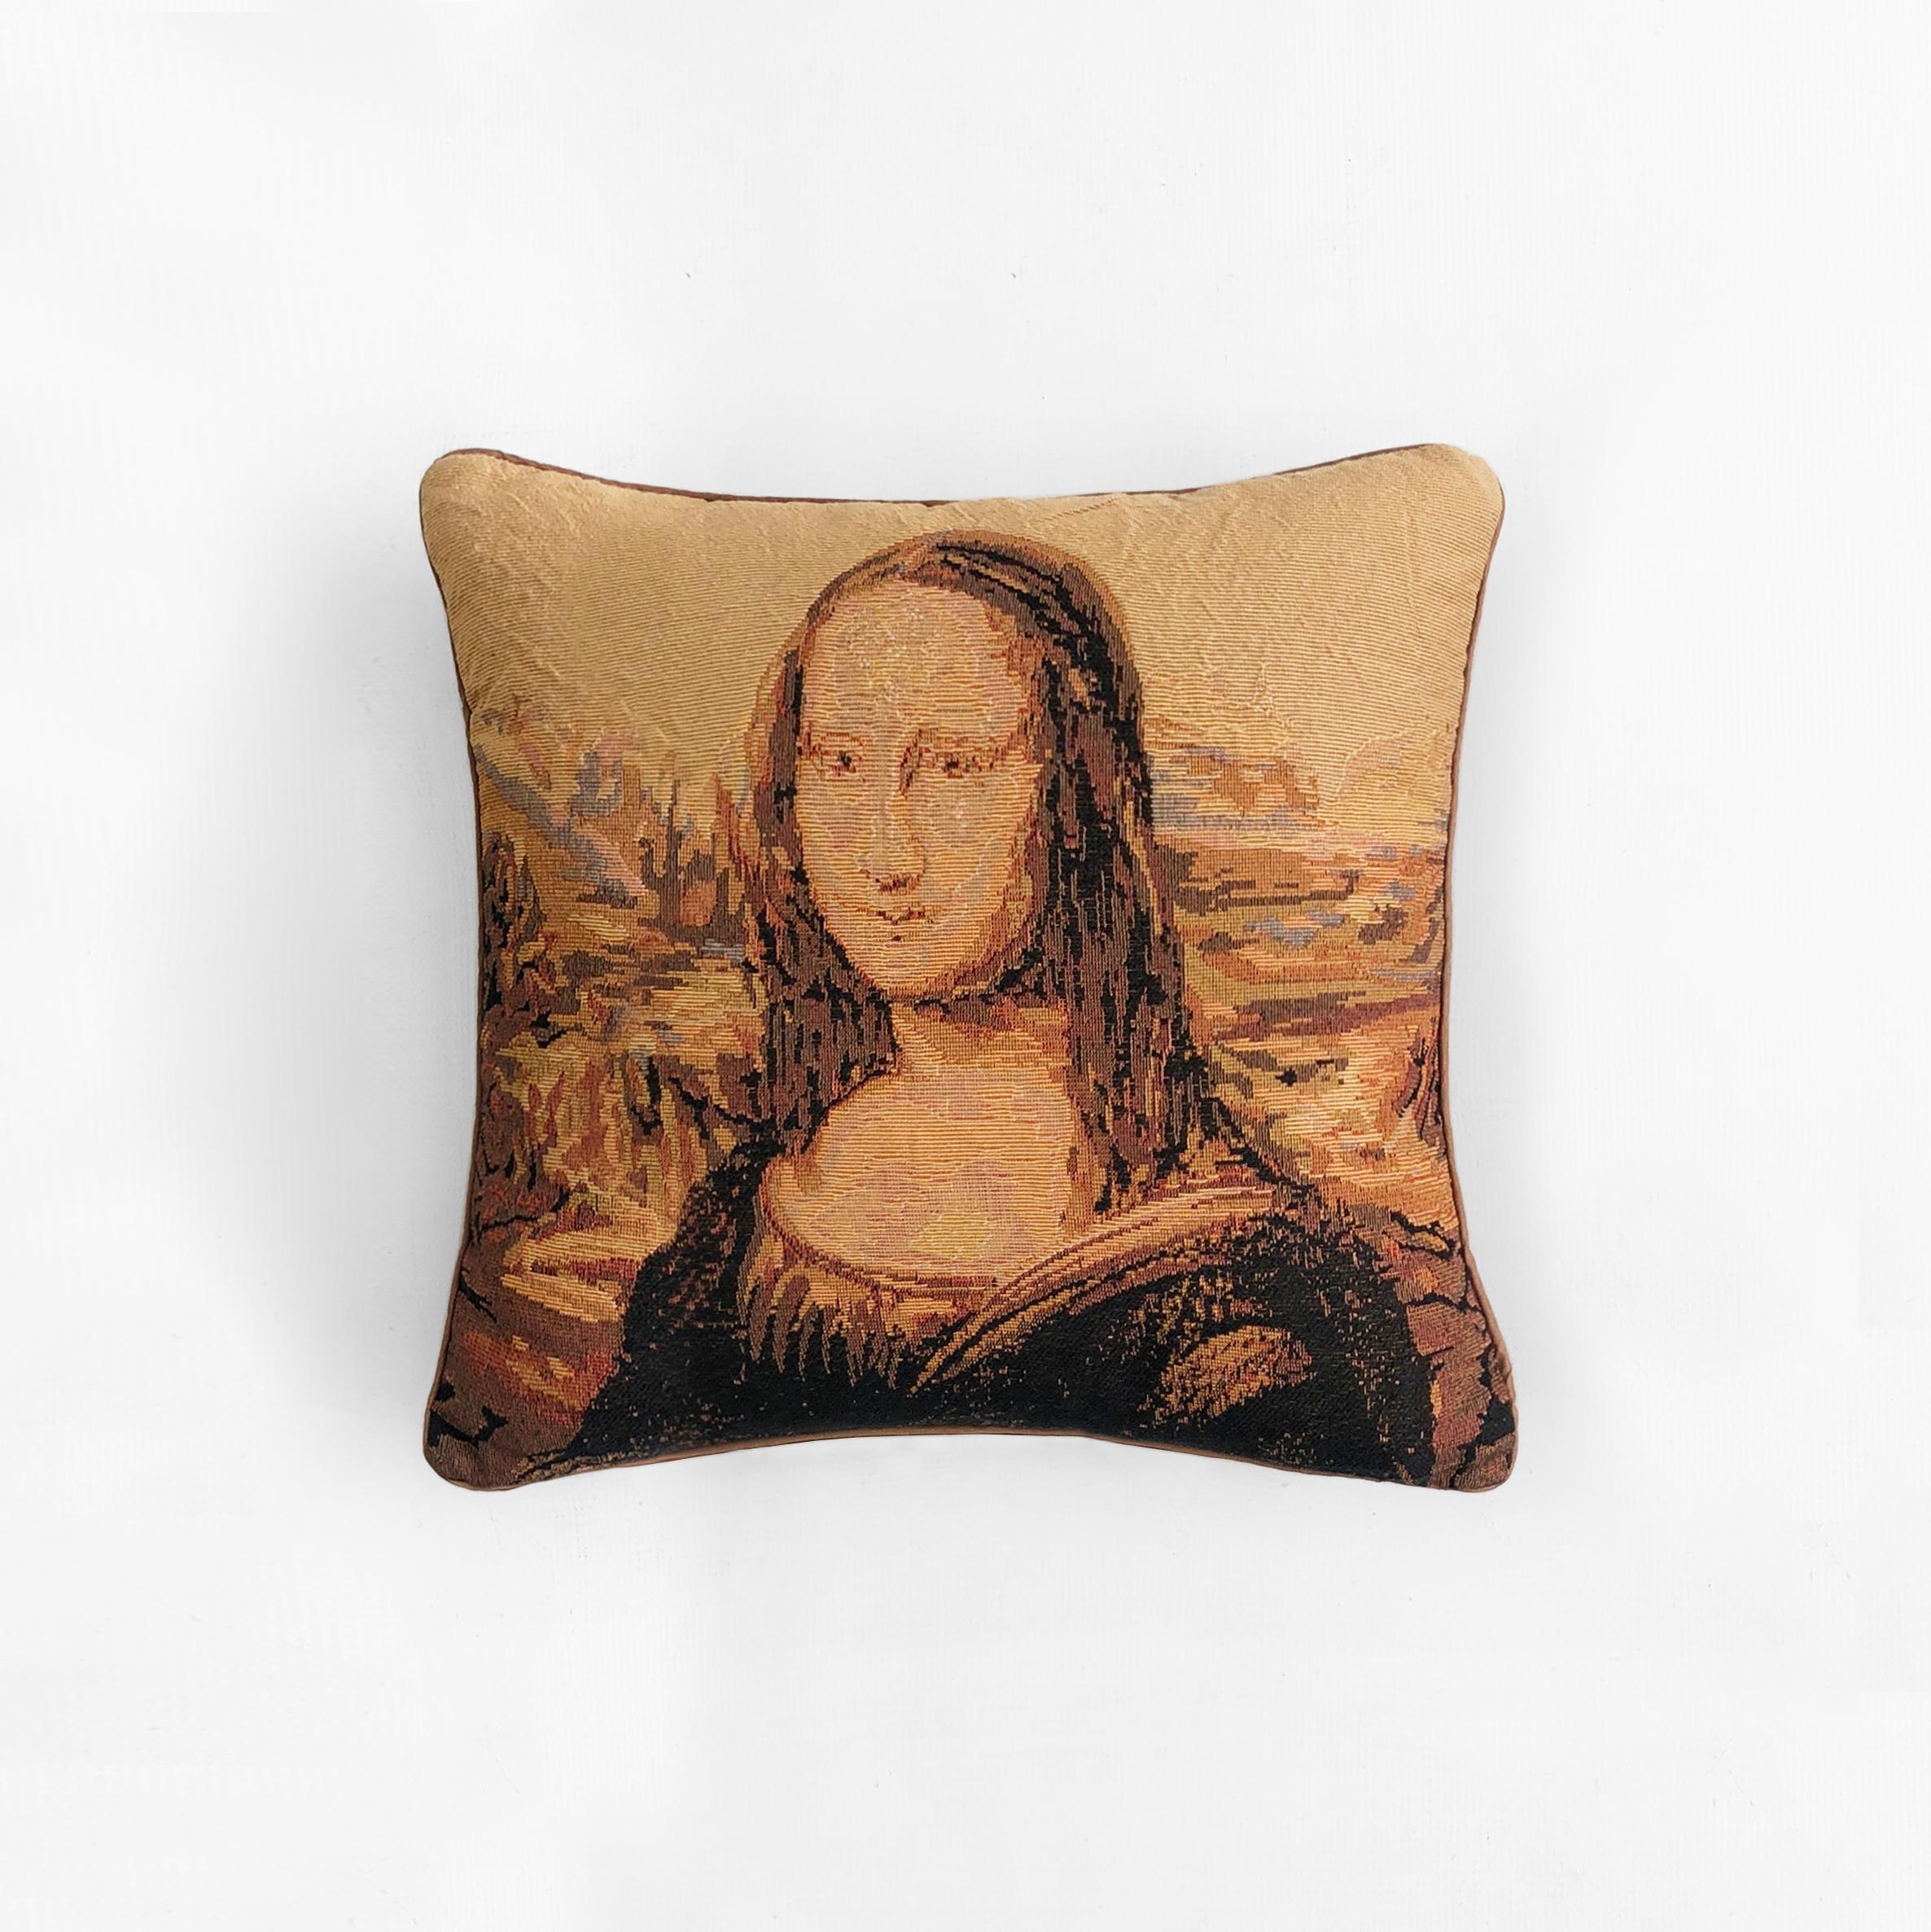 La Joconde est probablement l'œuvre d'art la plus célèbre au monde, et ces coussins confortables recréent fidèlement le chef-d'œuvre de Léonard de Vinci dans des tons chauds de jaune, de brun et d'orange, grâce à un tissage imitant le point de